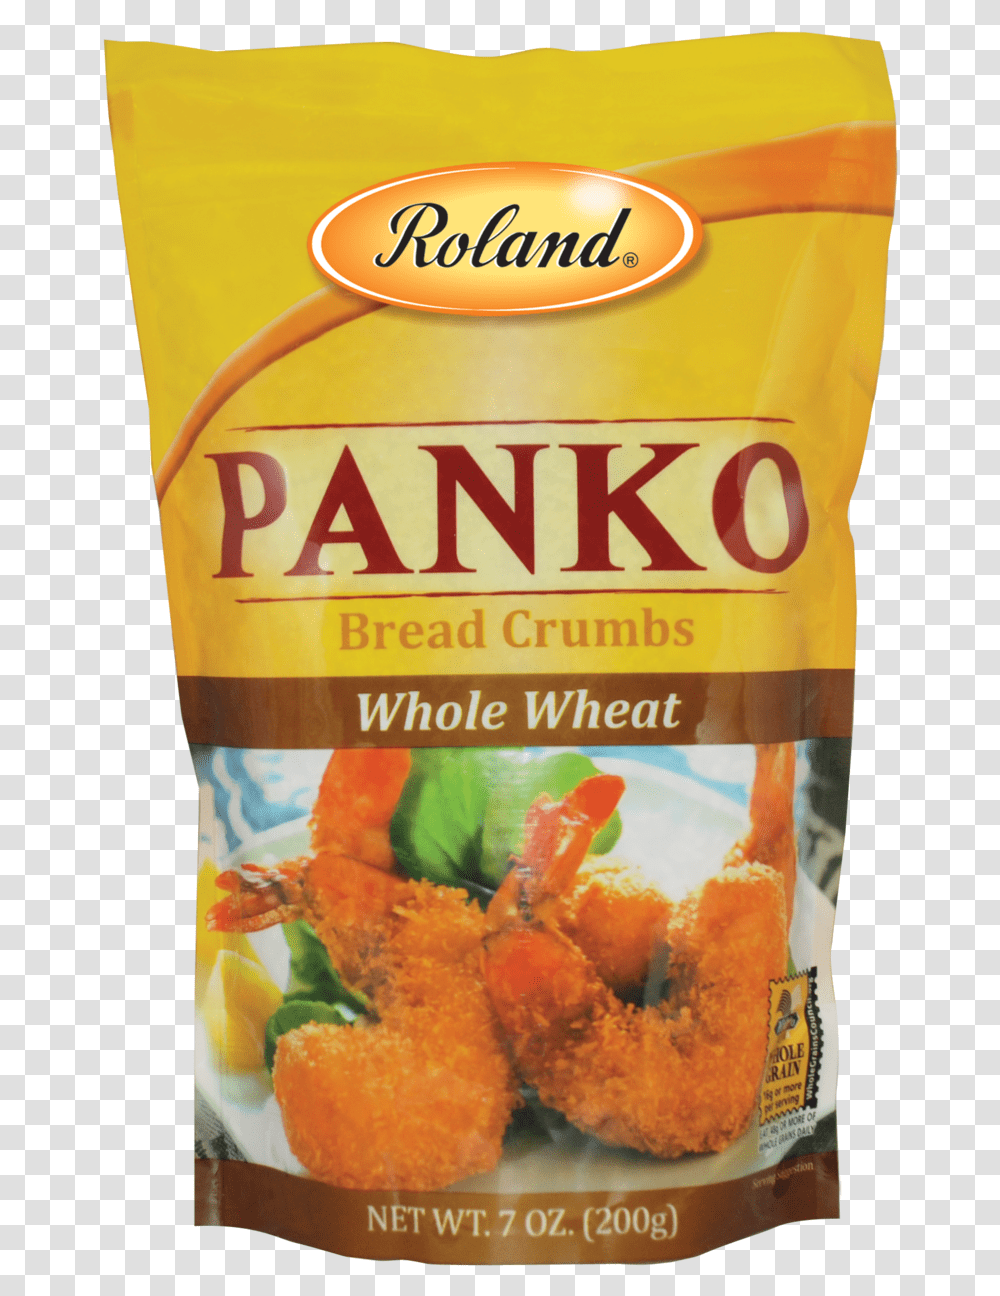 Roland Plain Panko Bread Crumbs 7 Oz, Plant, Food, Bottle, Fruit Transparent Png